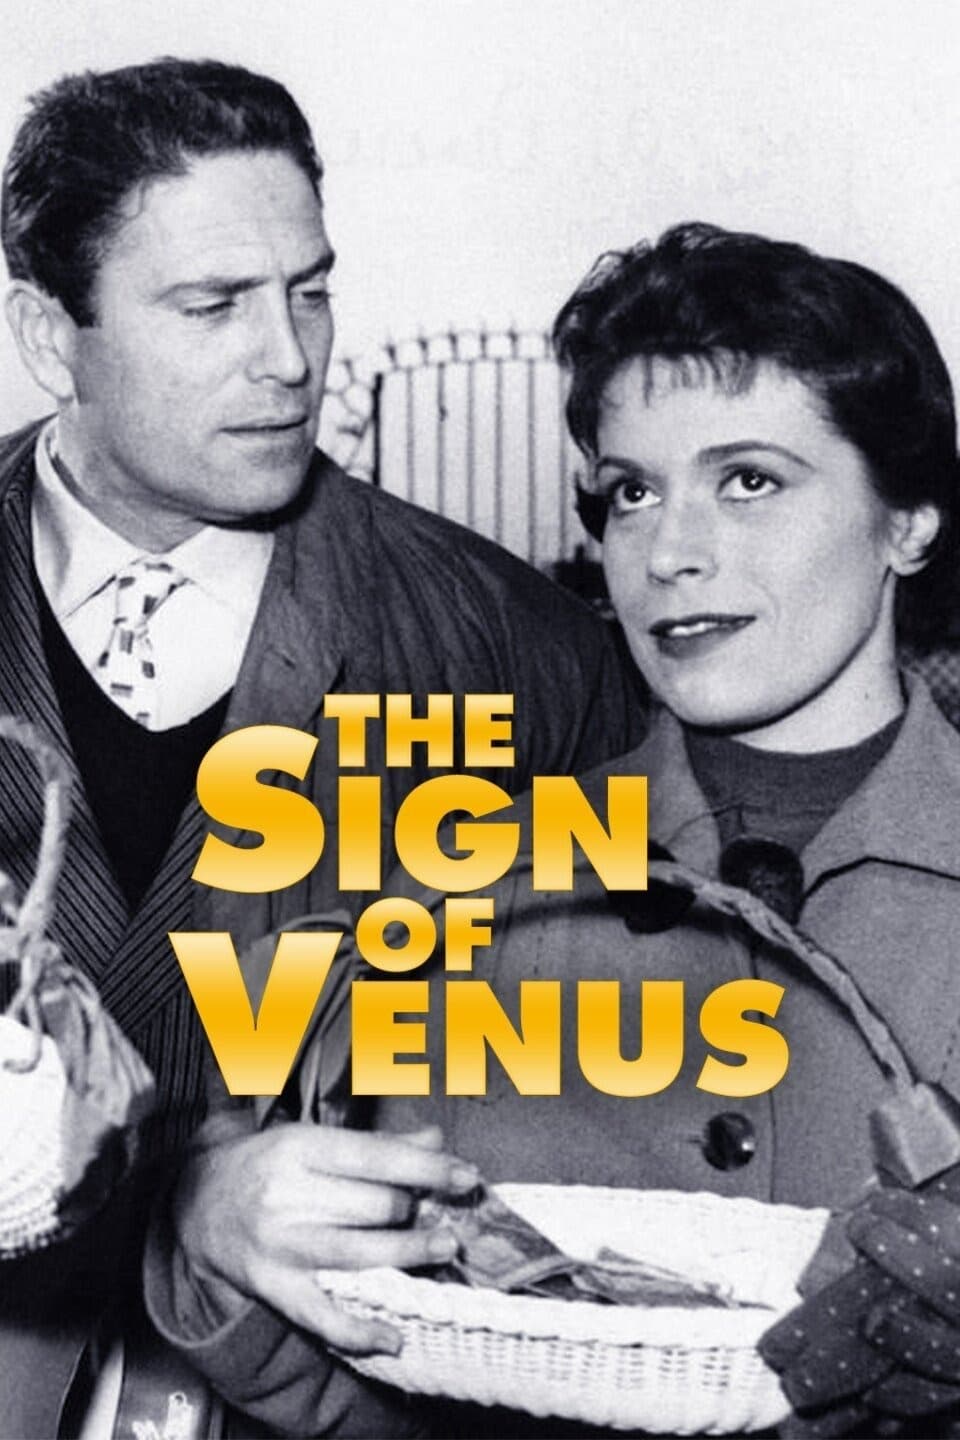 دانلود صوت دوبله فیلم The Sign of Venus